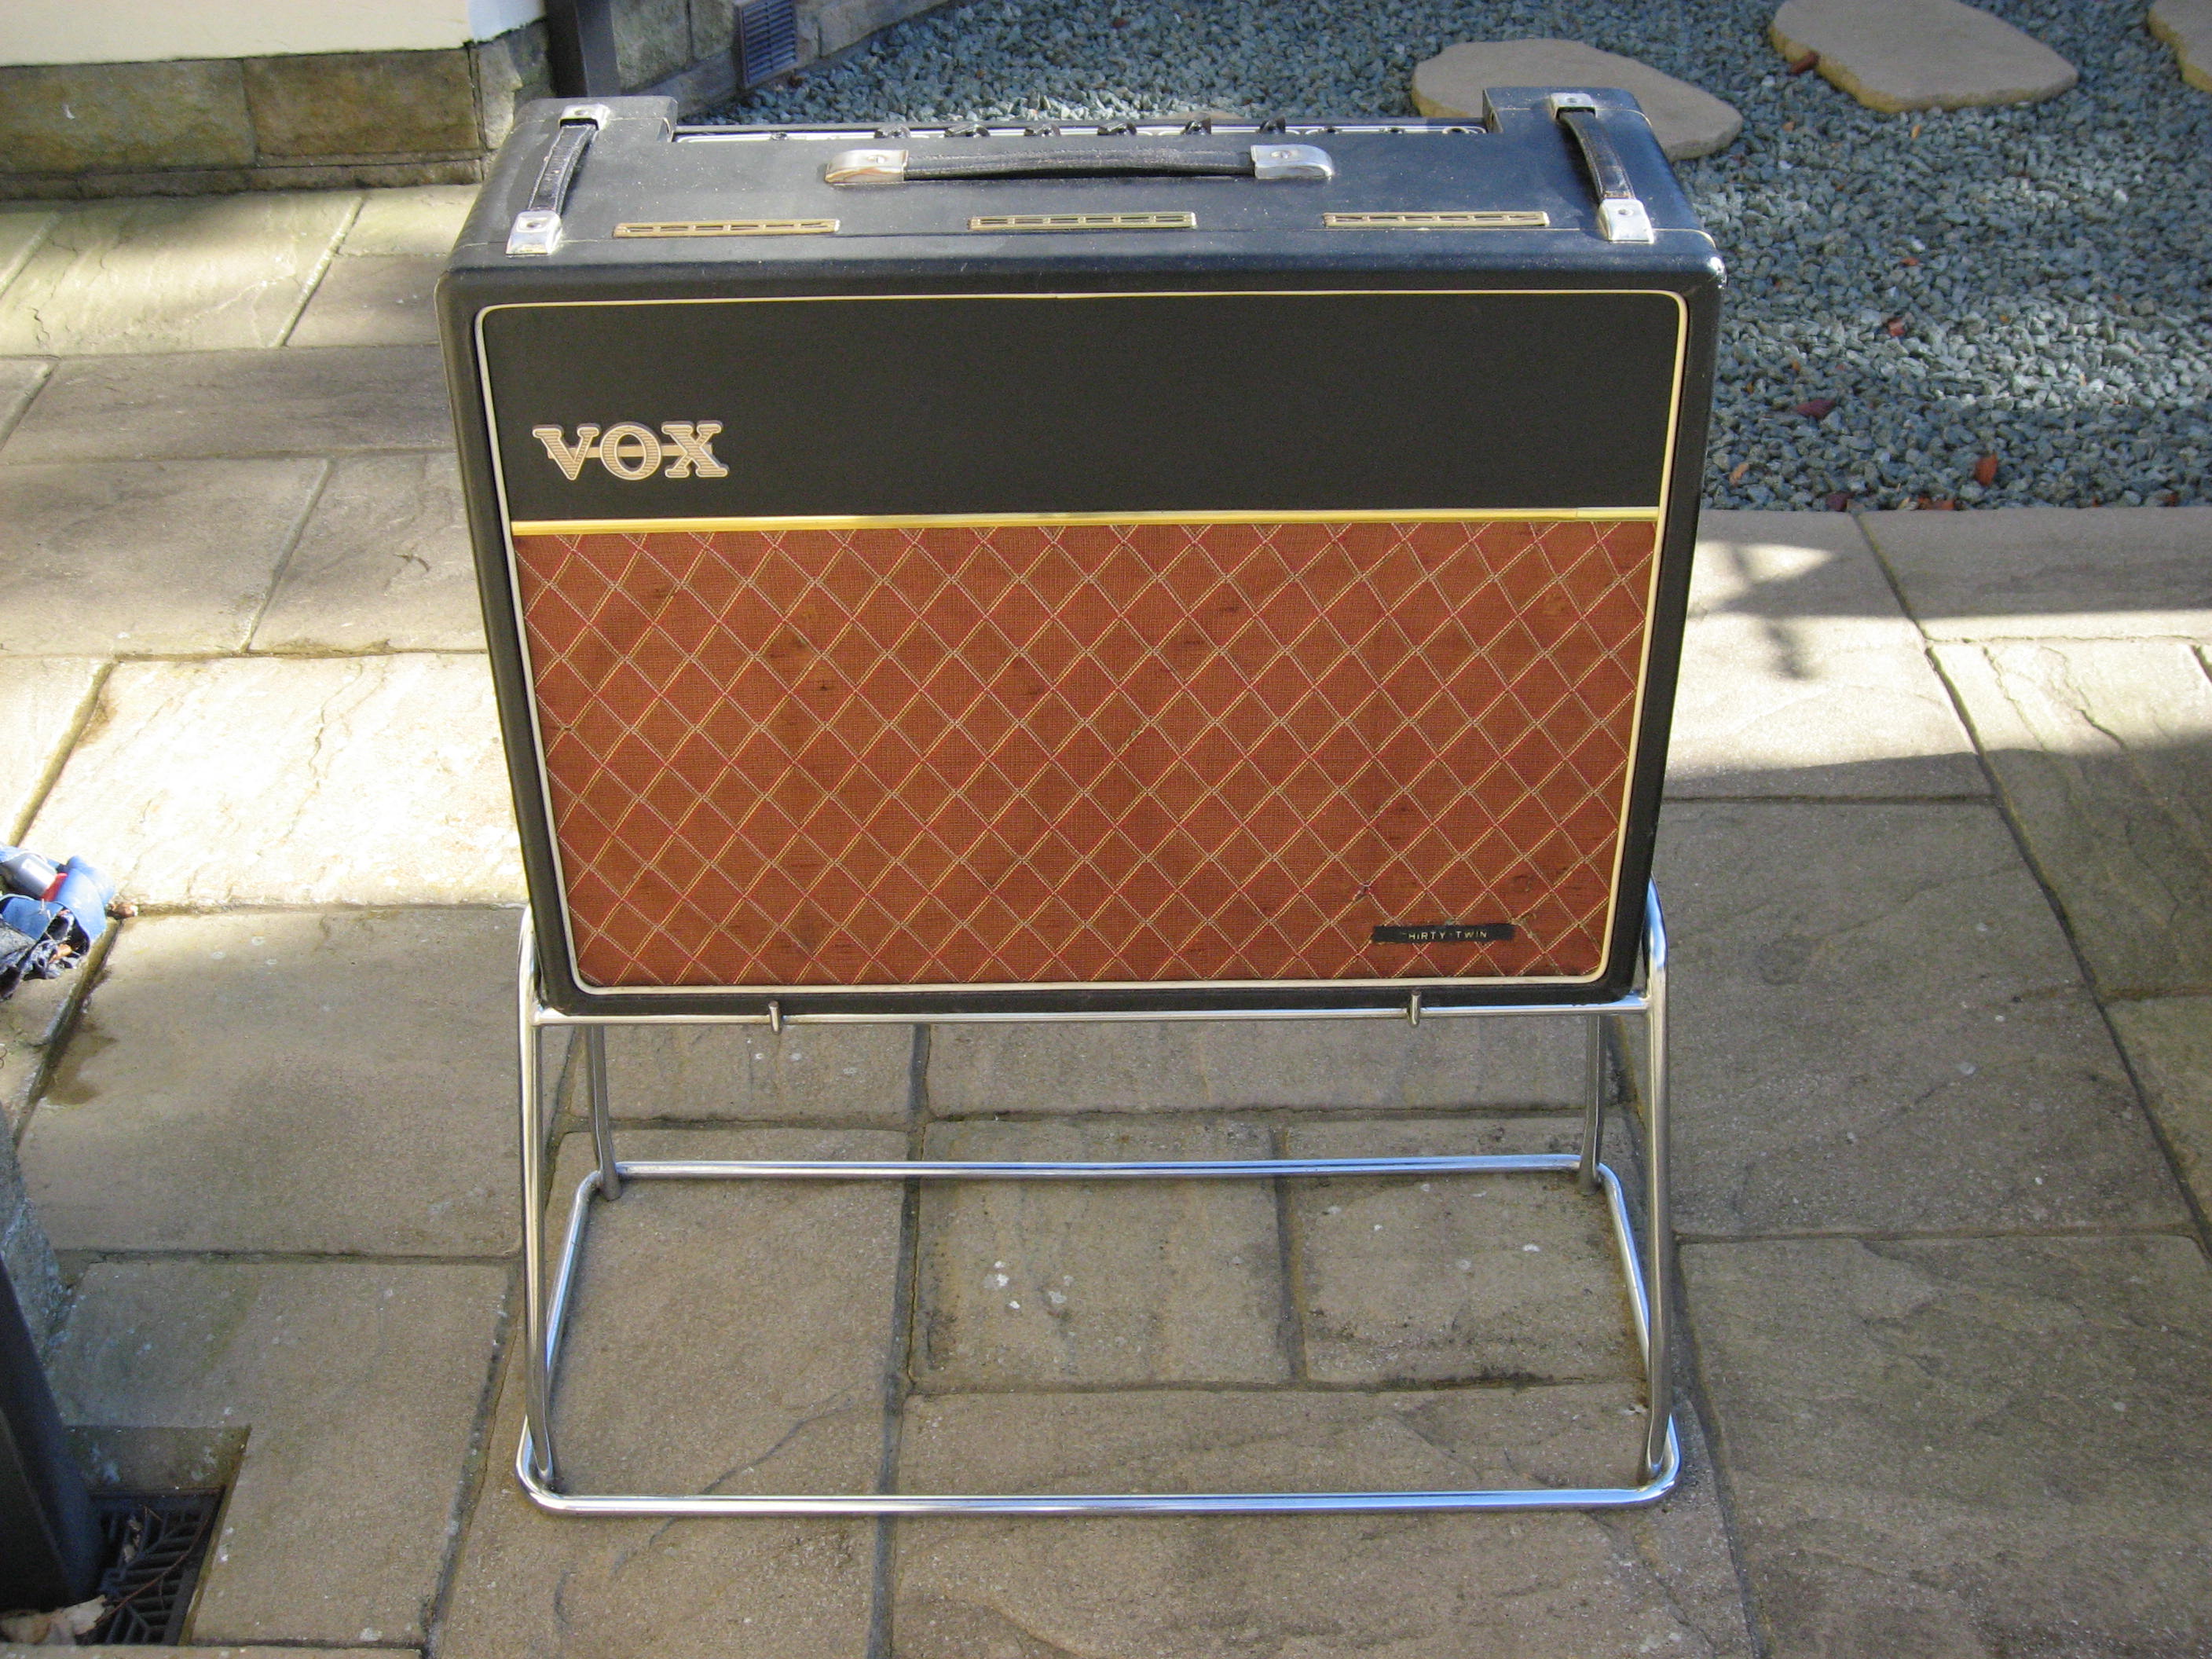 Vox amplifier schematics